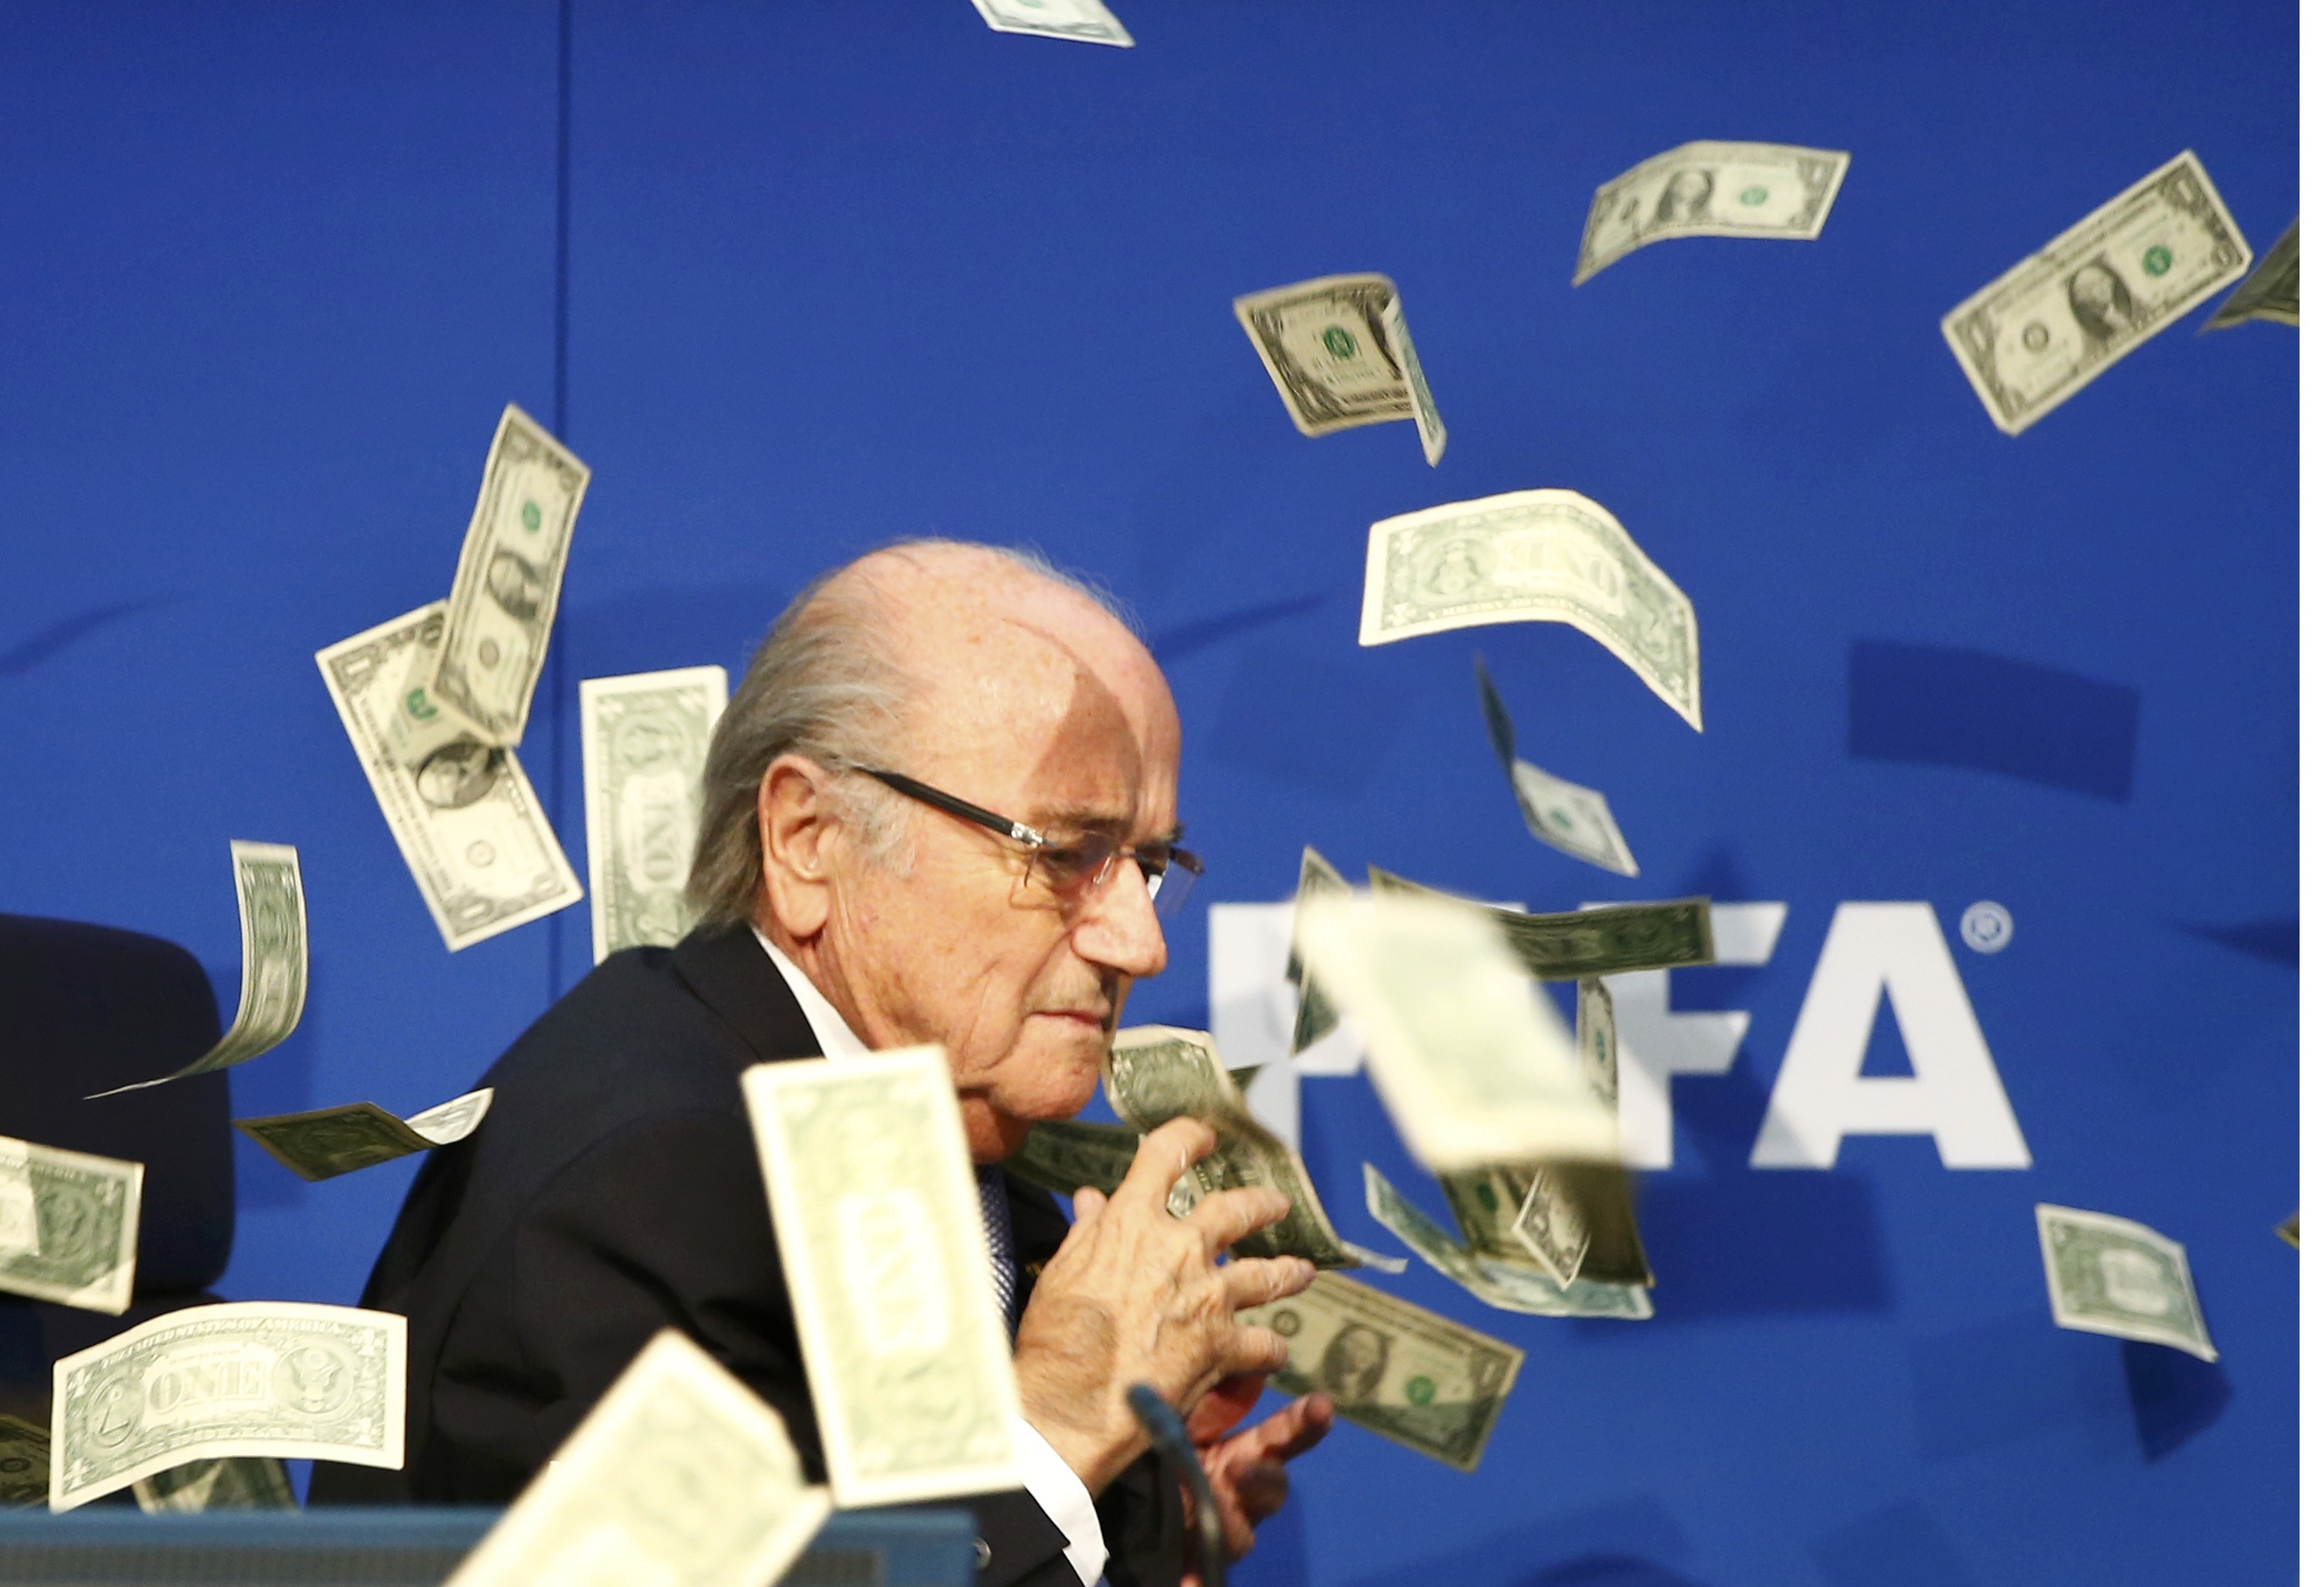 Intruso lanzó billetes de dólar a Blatter en su rueda de prensa (Fotos)